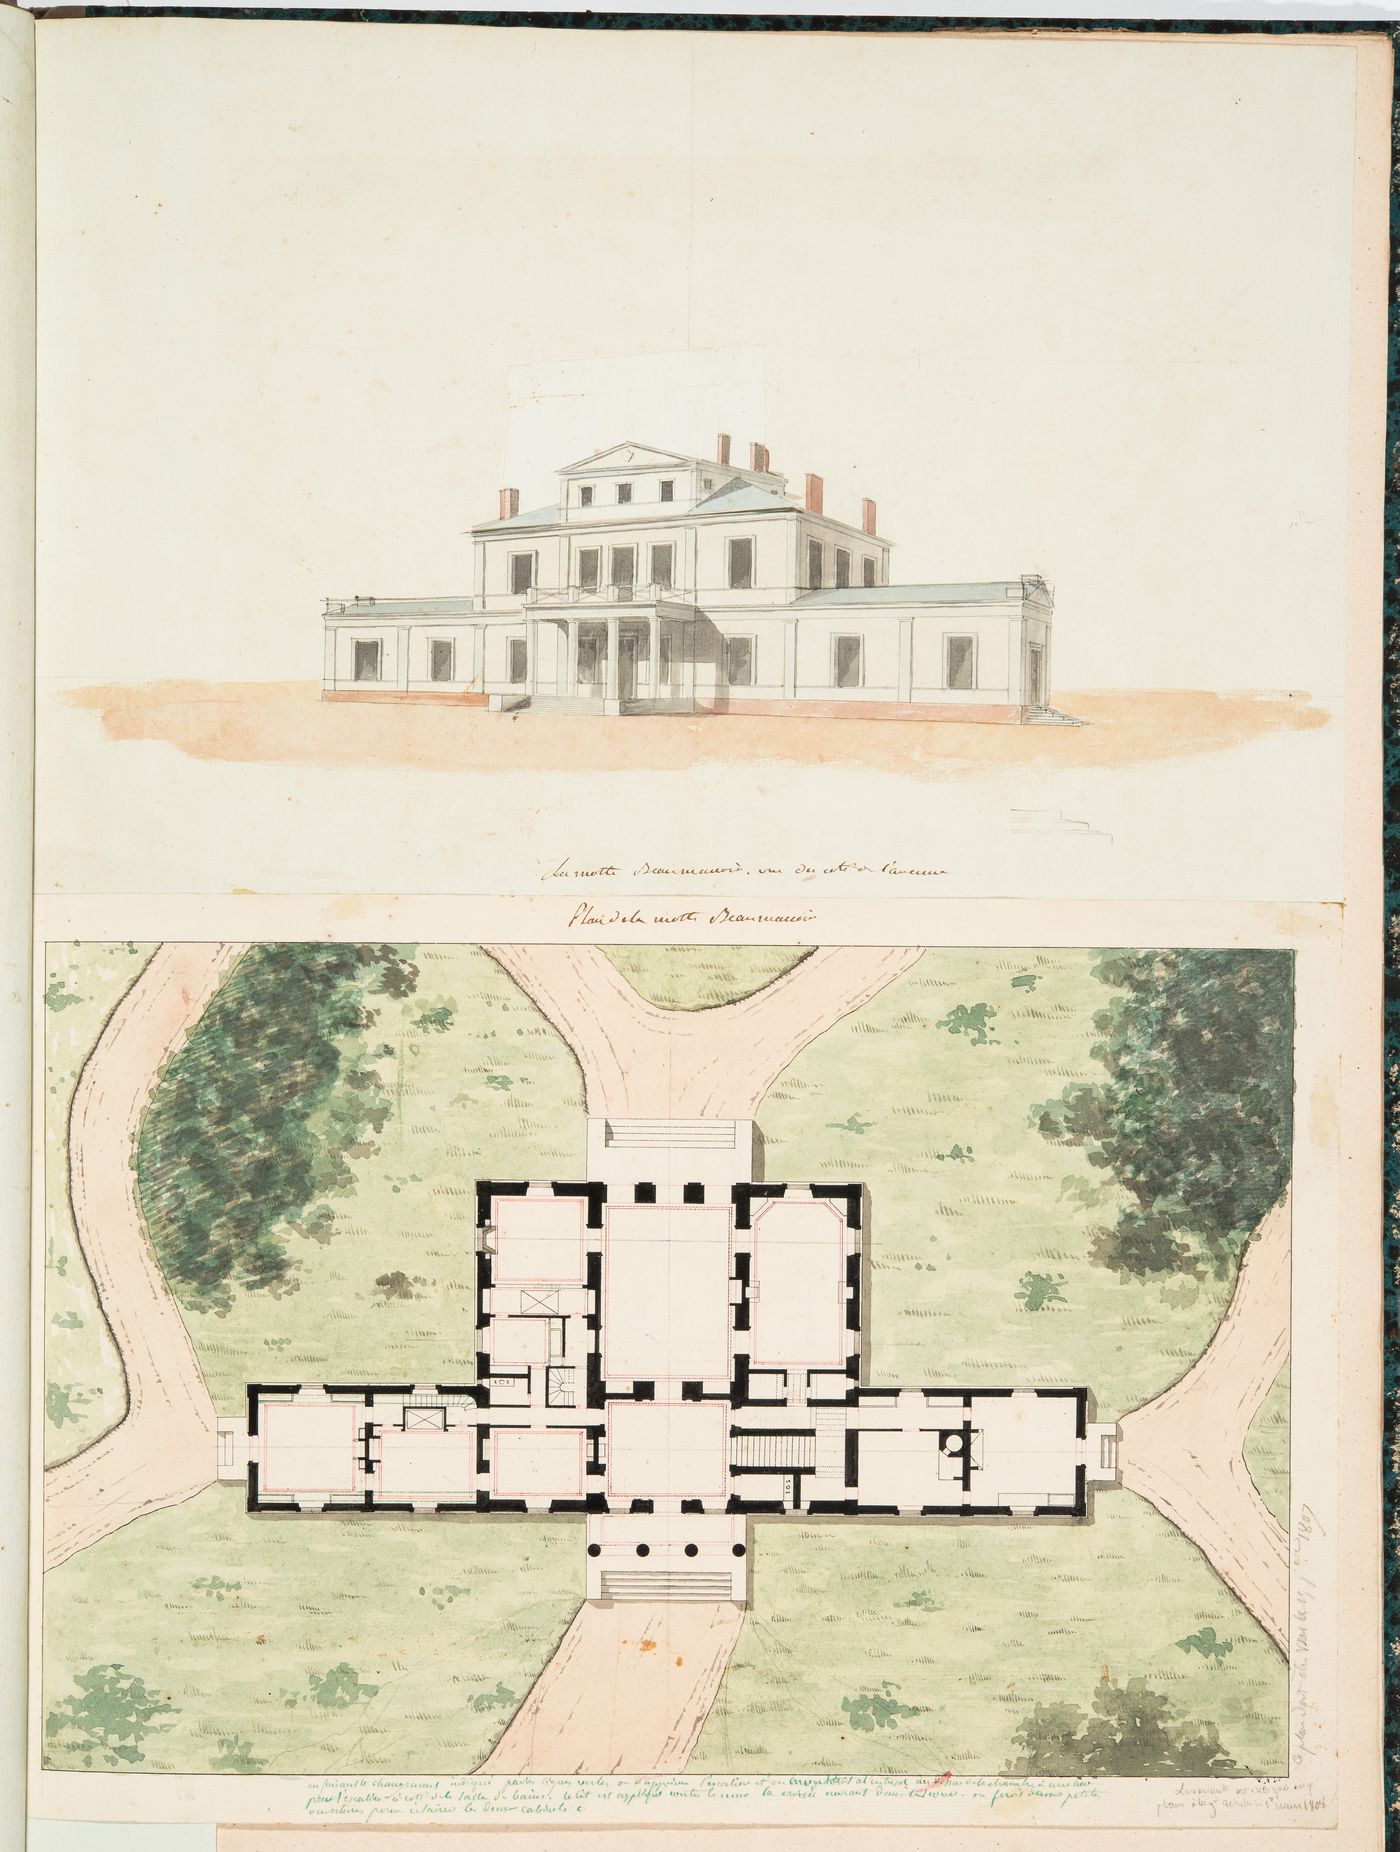 Project for a château for M. de Lorgeril, Motte Beaumanoir: Perspective and plan